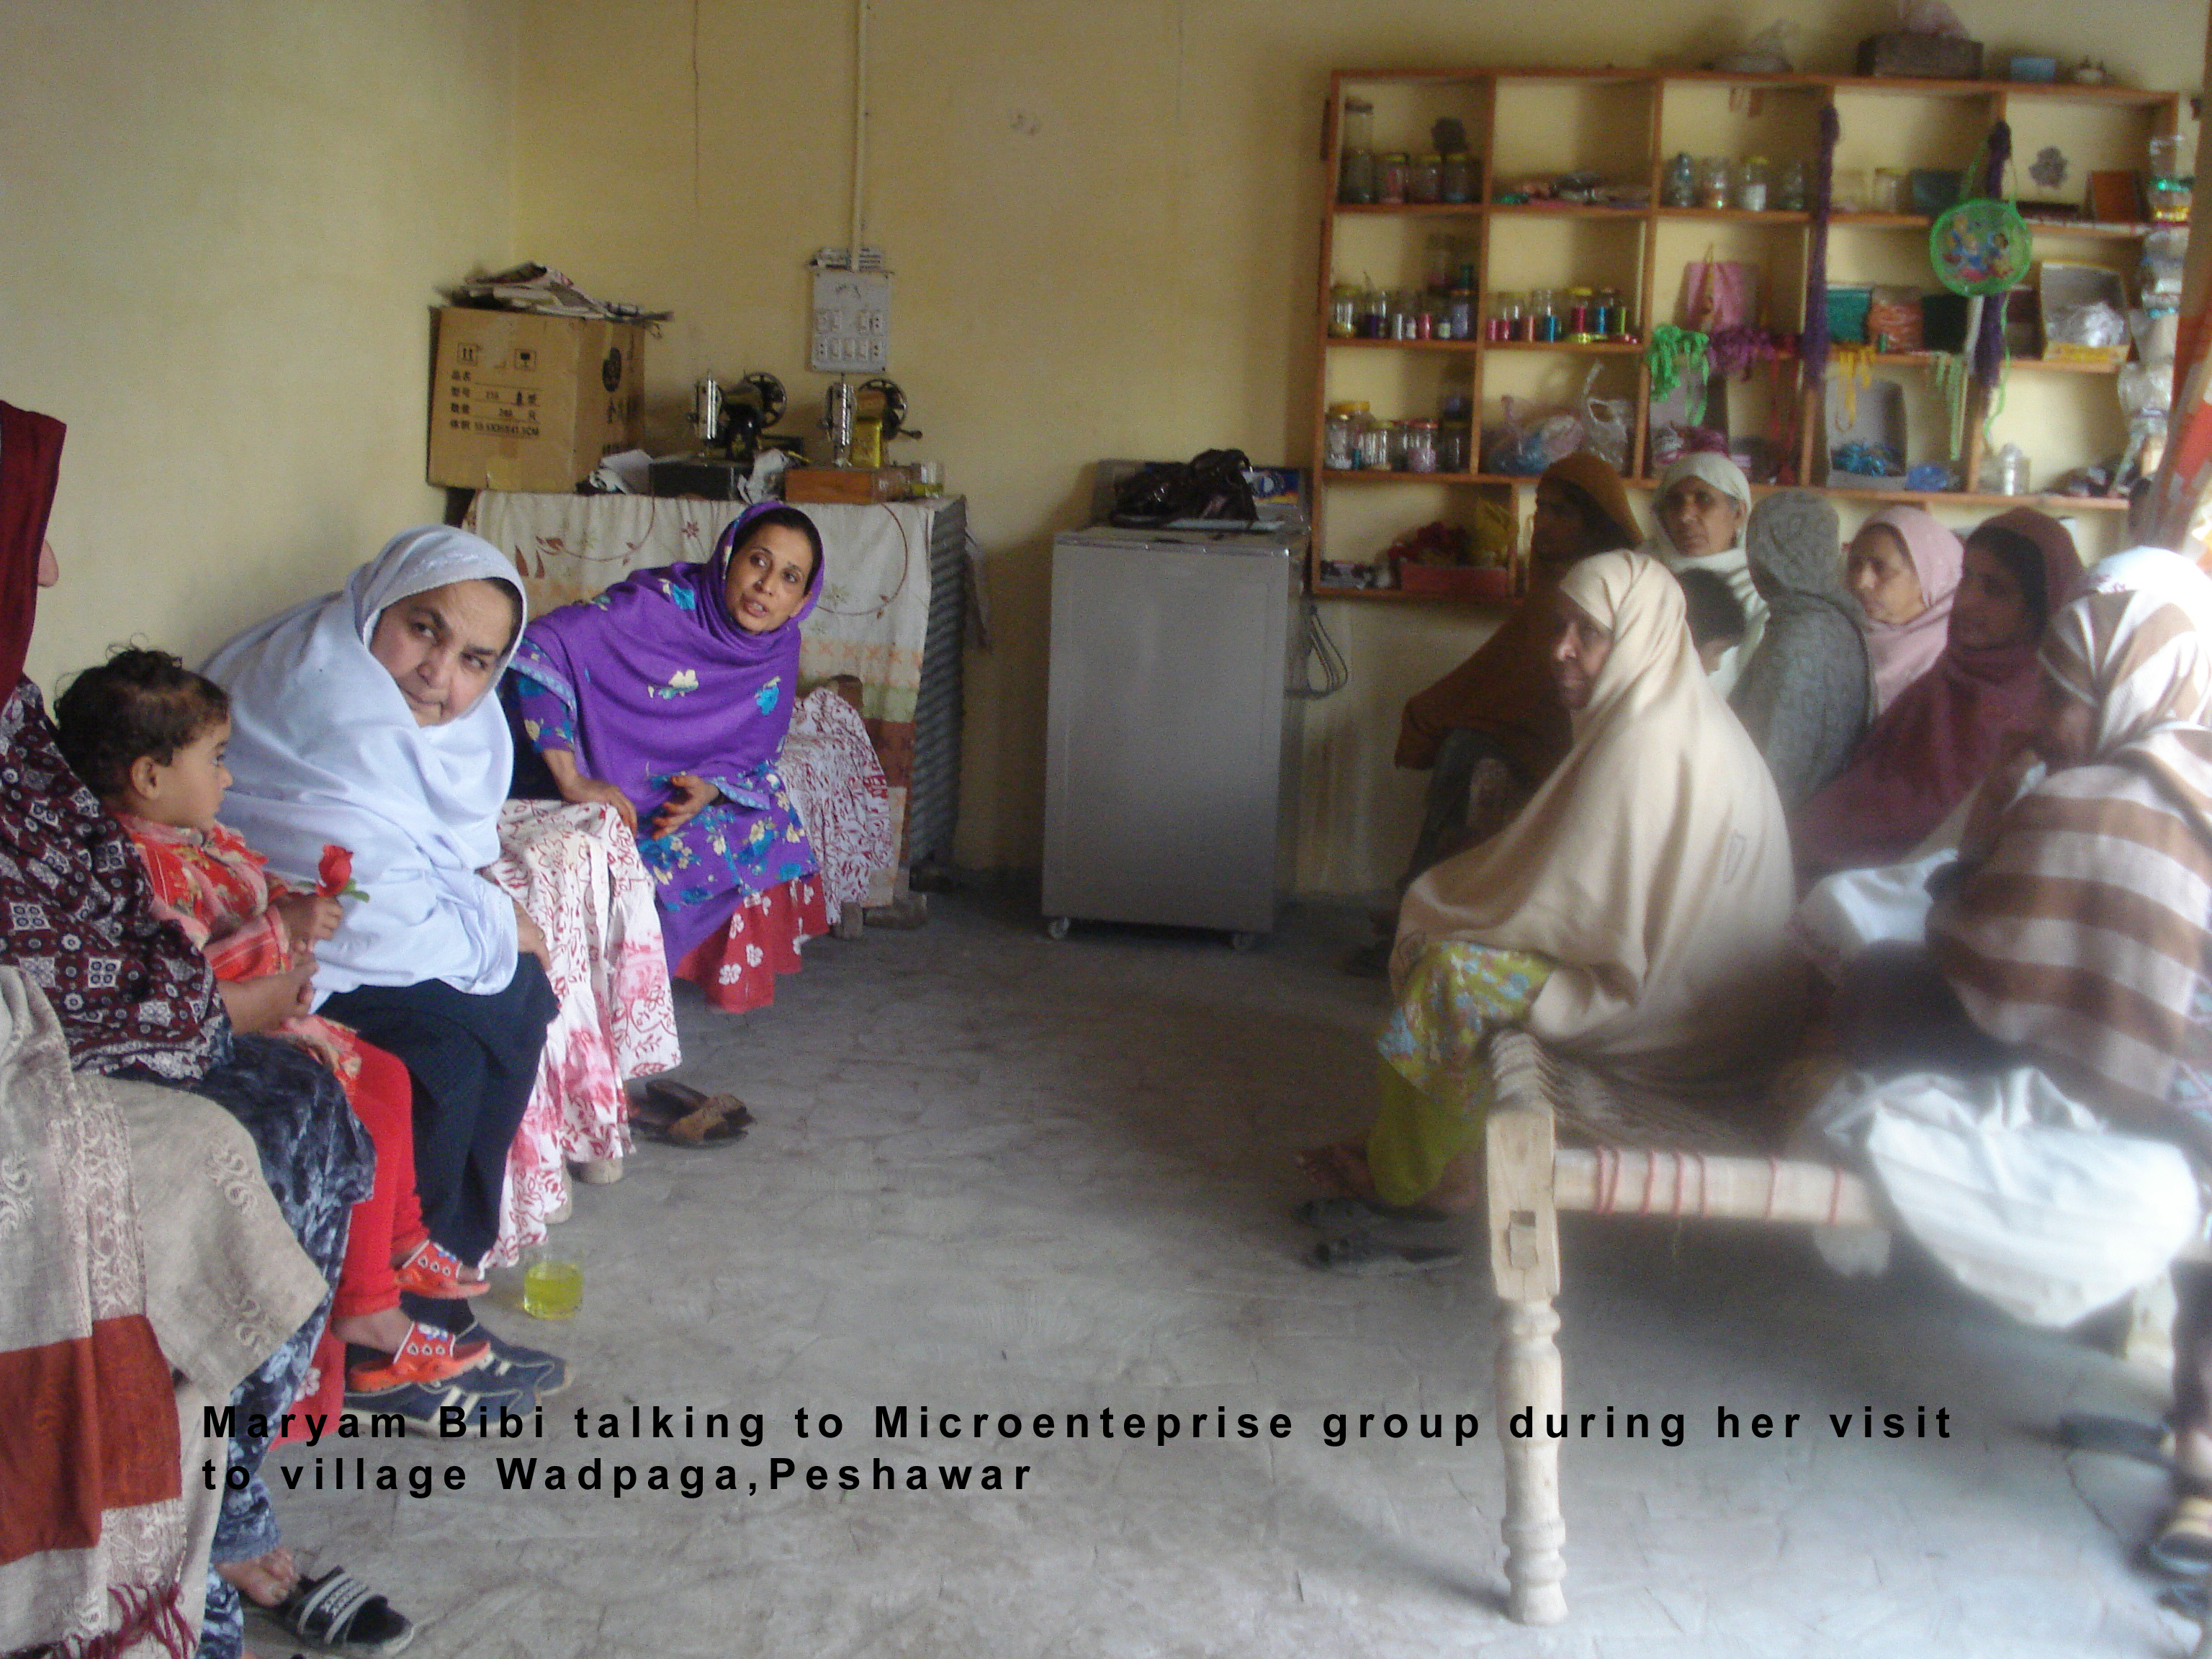 Maryam visits microenterprise group in Wadpaga, Peshawar